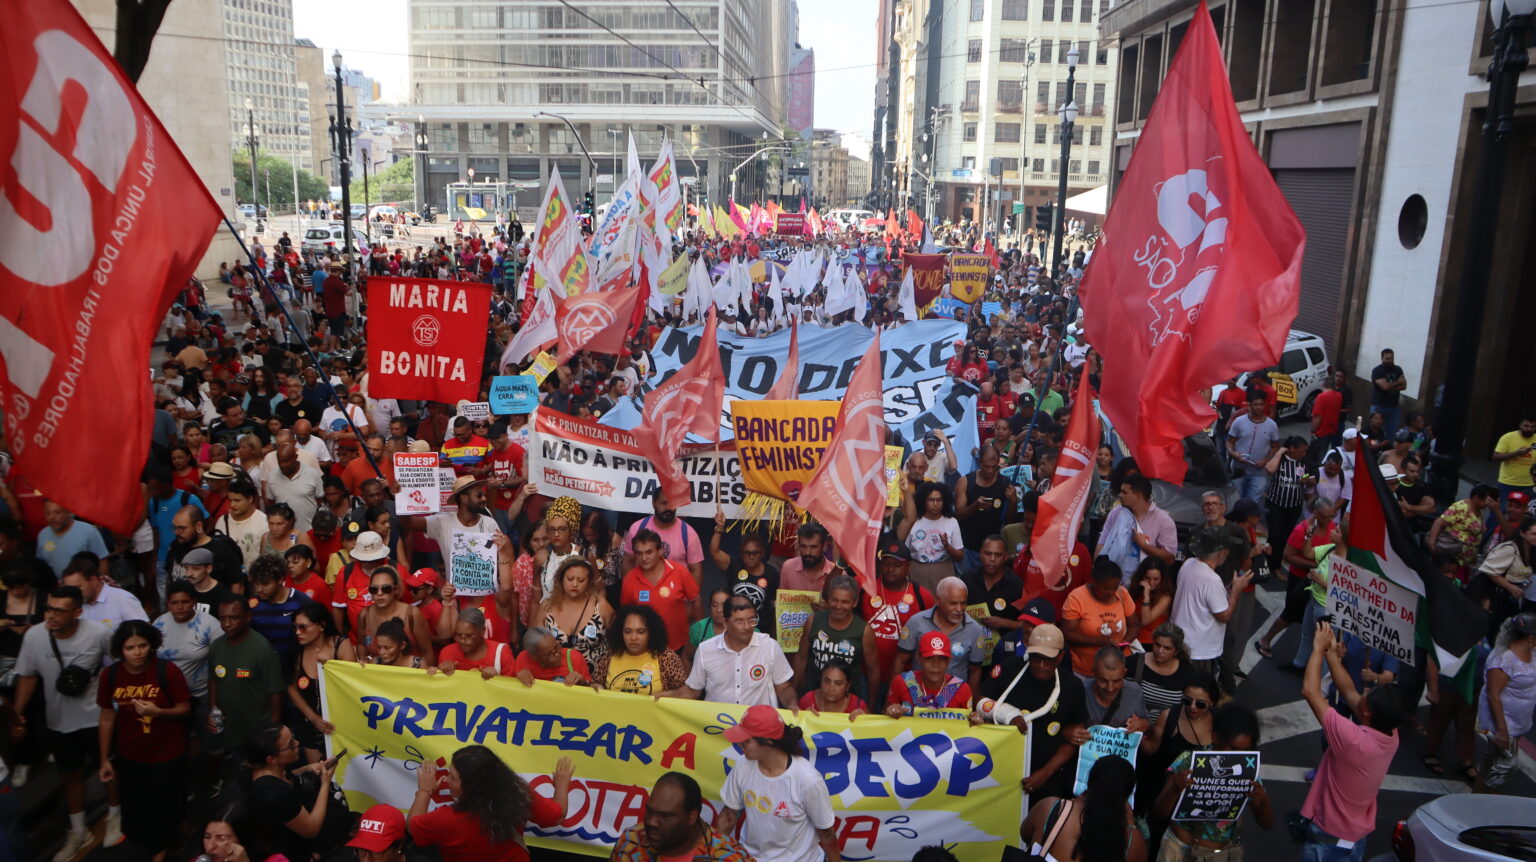 População marcha contra a privatização reúne 5 mil em defesa da Sabesp